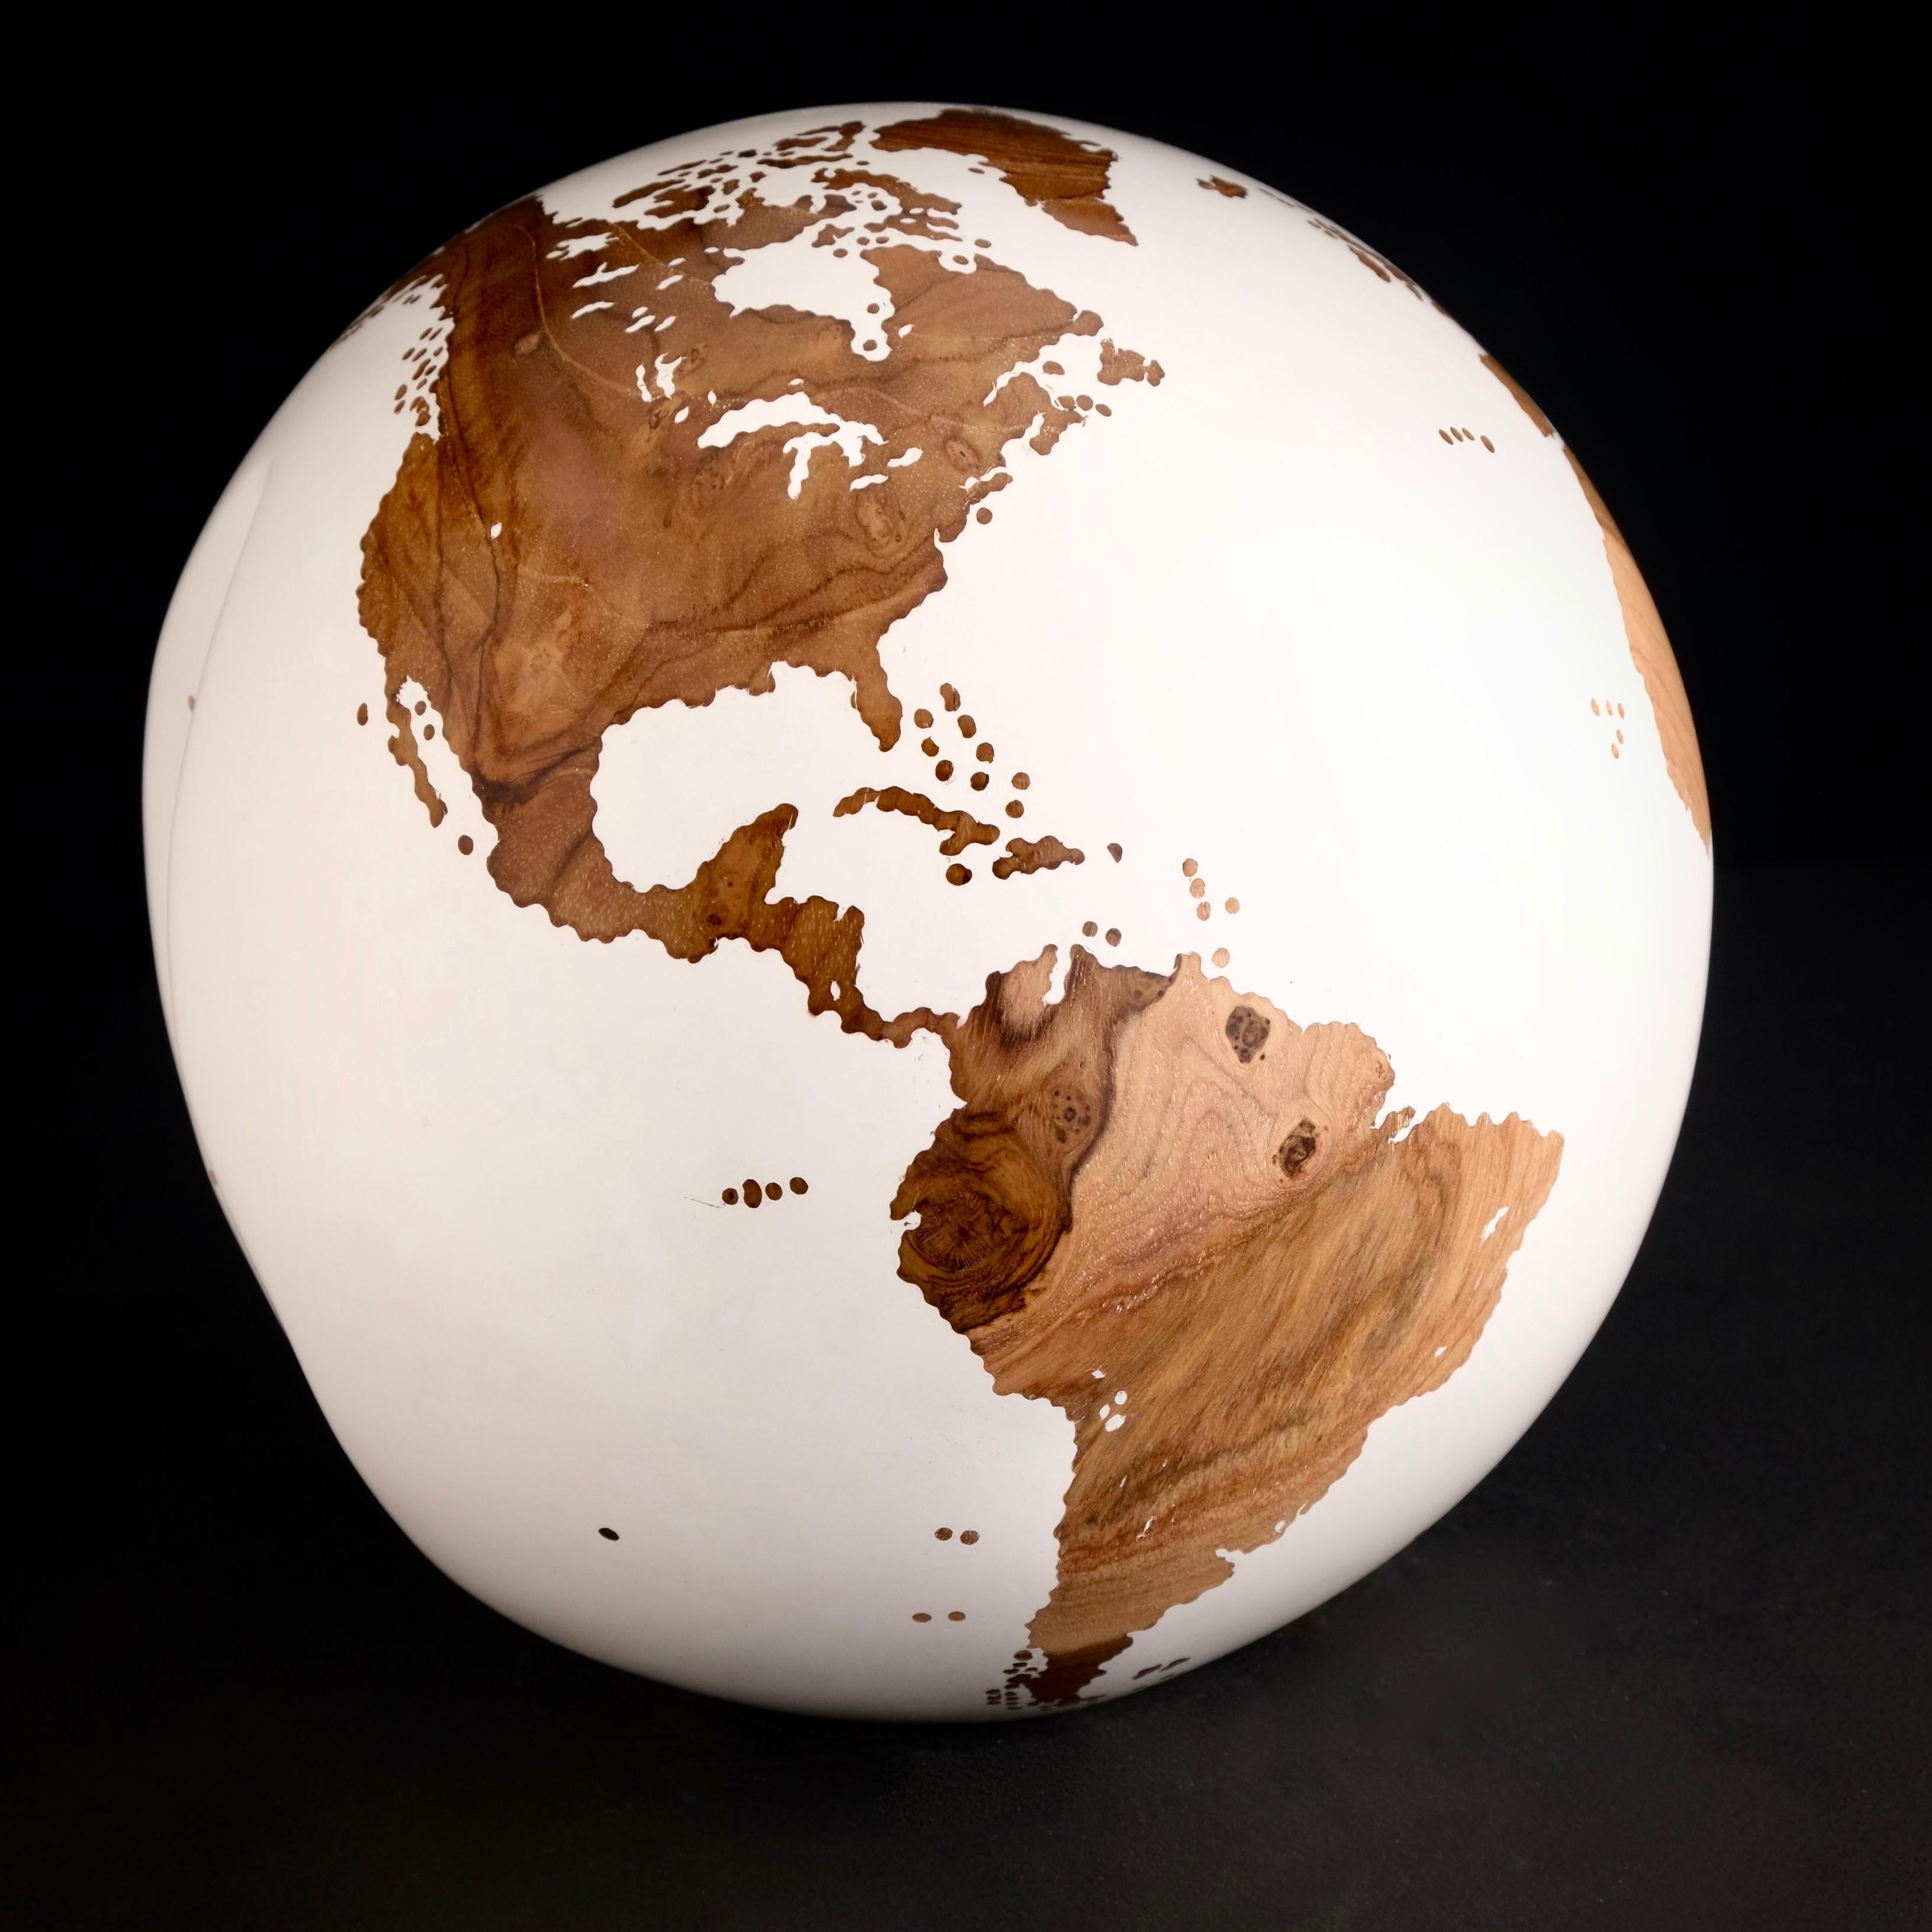 Le bois de teck et la laque blanche font de ce magnifique globe tournant une véritable sculpture étonnante.
Réalisée à partir d'un morceau de bois entier, la sculpture est façonnée en fonction de la croissance de l'arbre.
Posée sur un socle